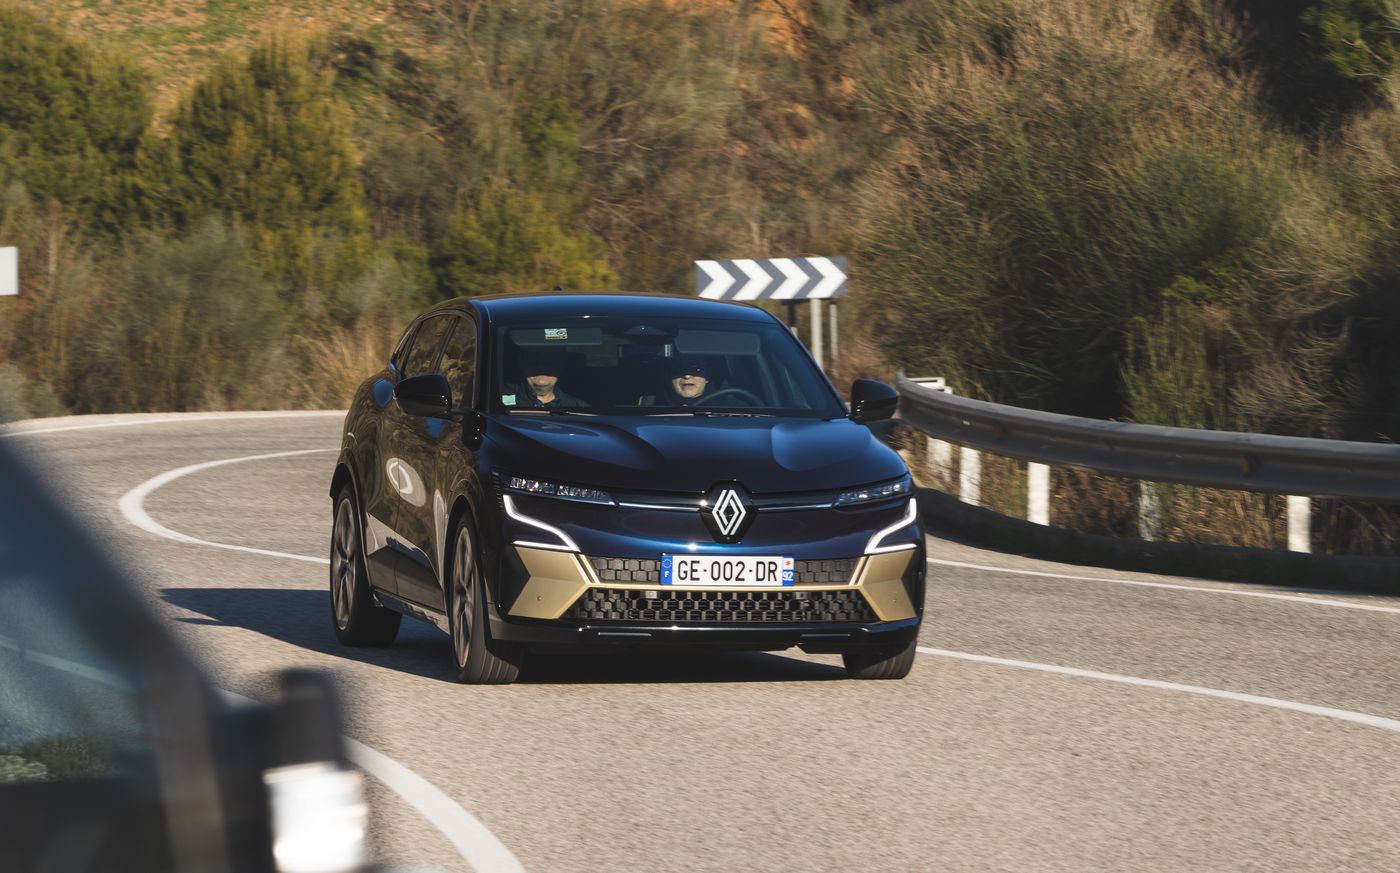 Essai : Renault Mégane 4